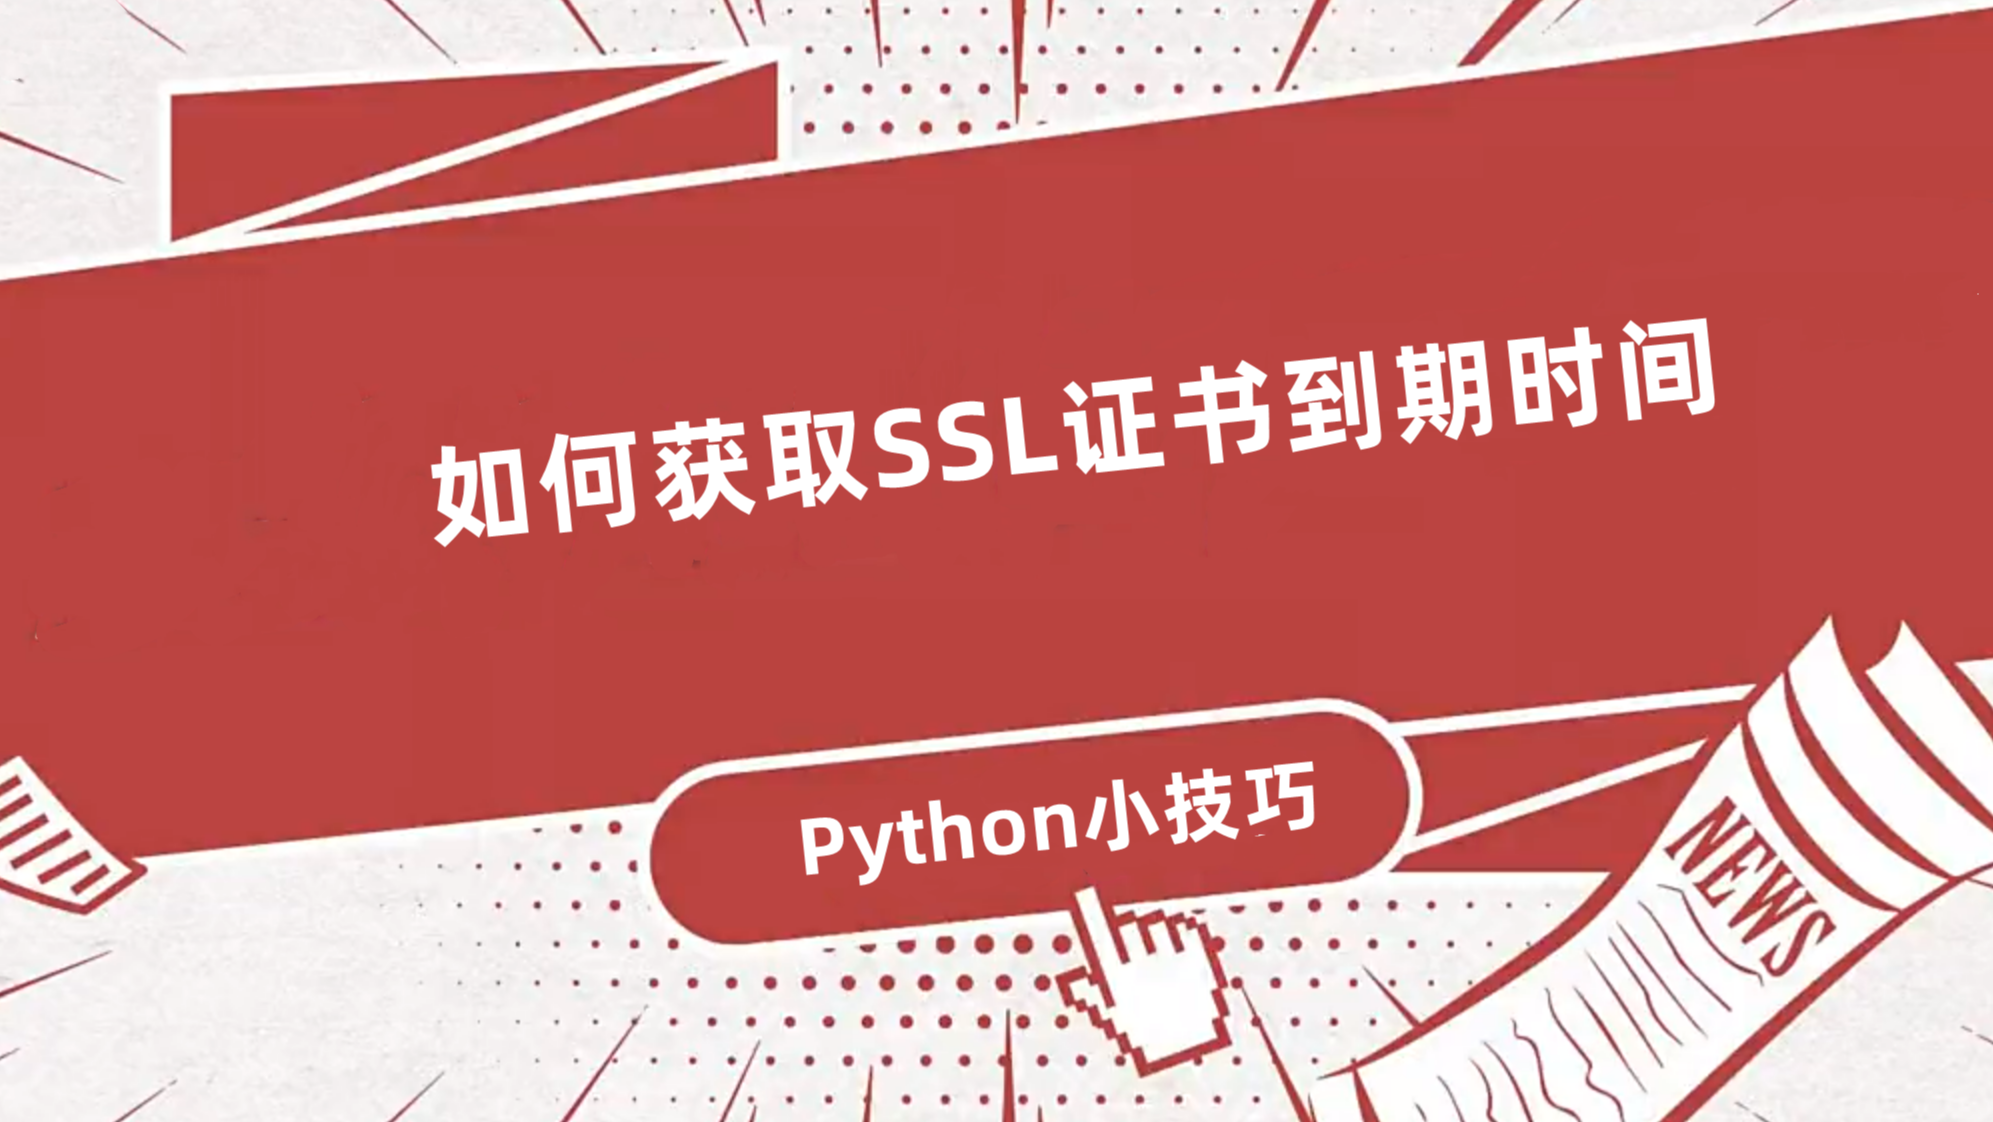 通过python获取SSL证书到期时间